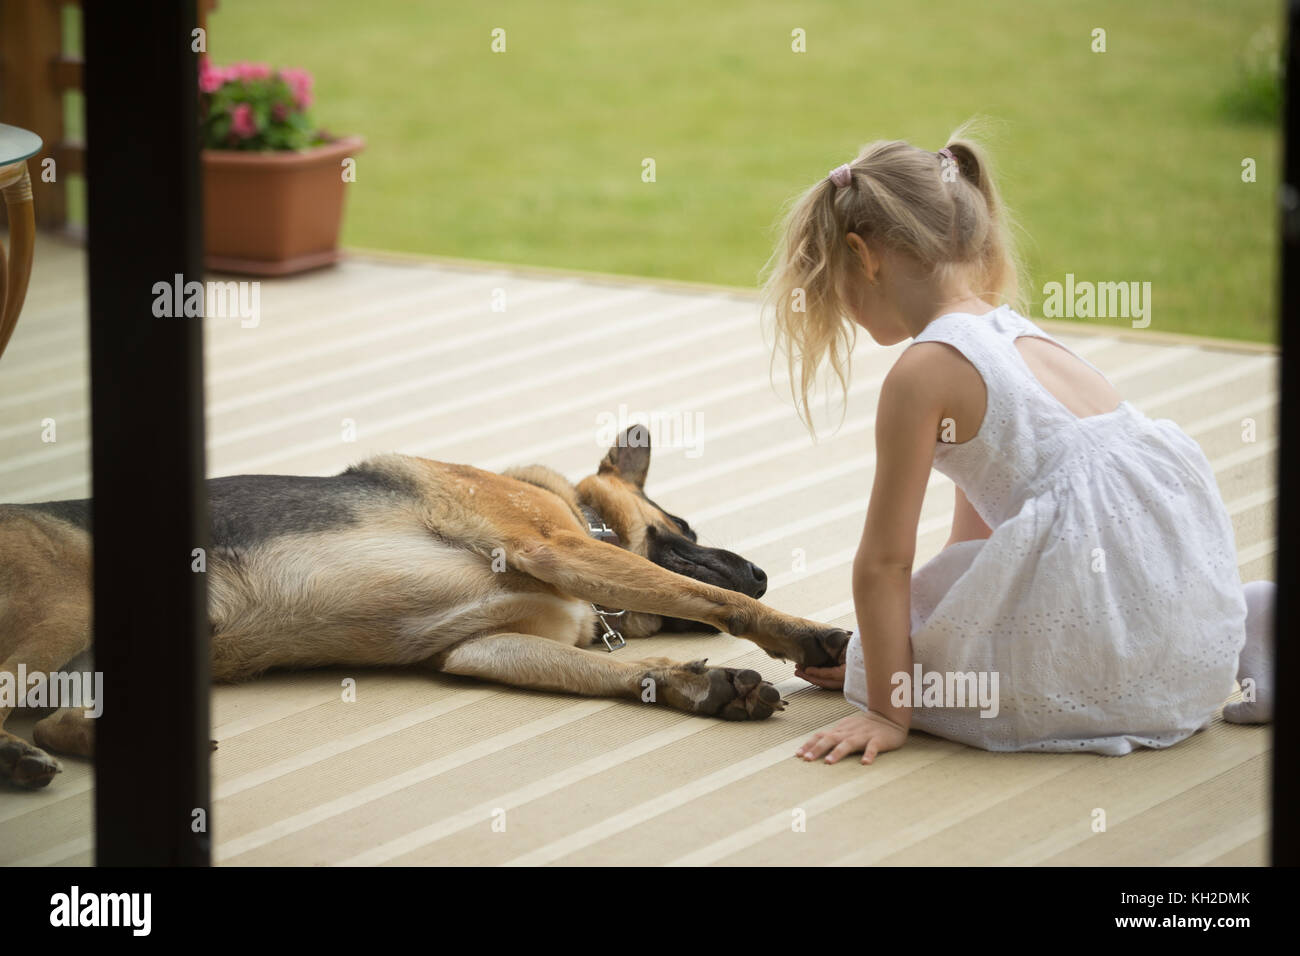 Kleines Mädchen halten Hunde Pfote in der Nähe von Pet auf der Veranda sitzen, Ansicht von hinten am Kind, Haustier, Krankheit, Verletzung, Kid spielen mit inländischen Stockfoto